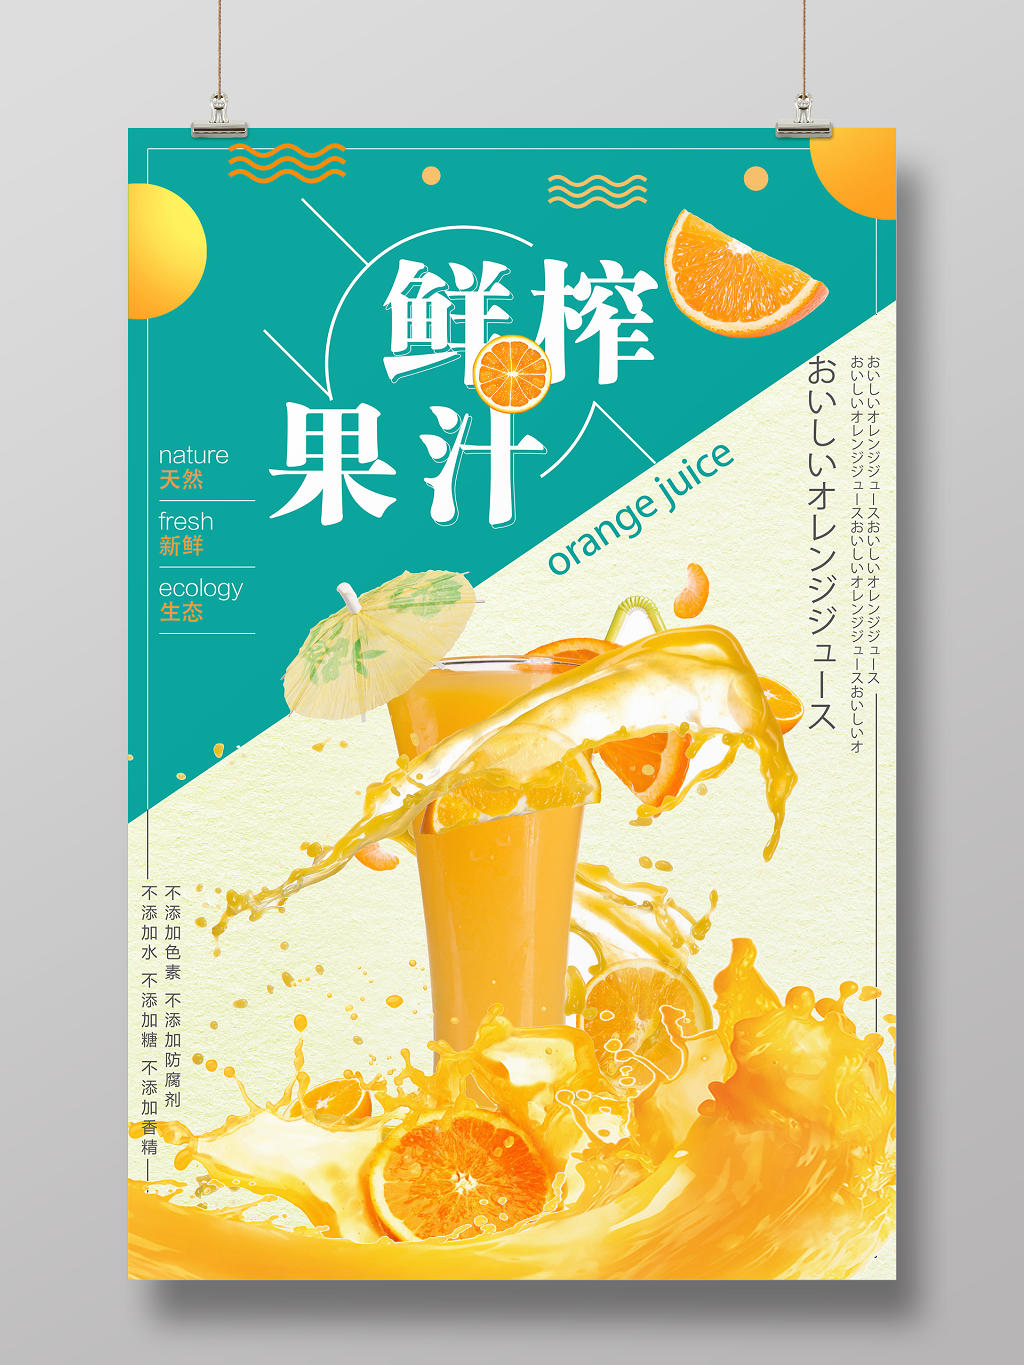 蓝色简约鲜榨果汁水果橙子海报